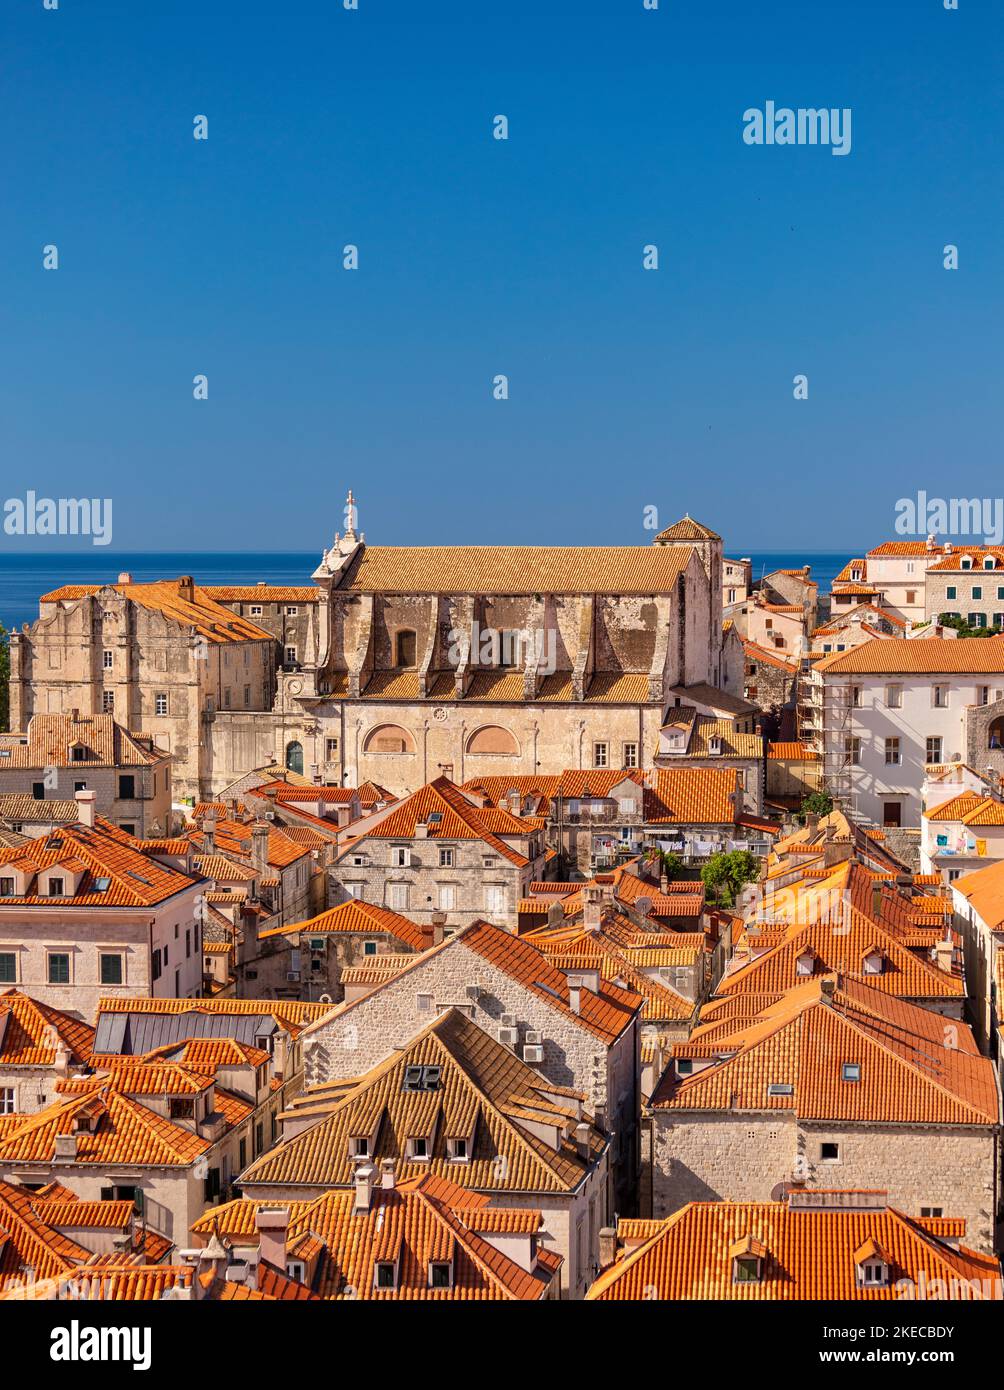 DUBROVNIK, CROATIE, EUROPE - Eglise Saint Ignace, en haut, dans la ville fortifiée de Dubrovnik sur la côte de la Dalmation. Banque D'Images